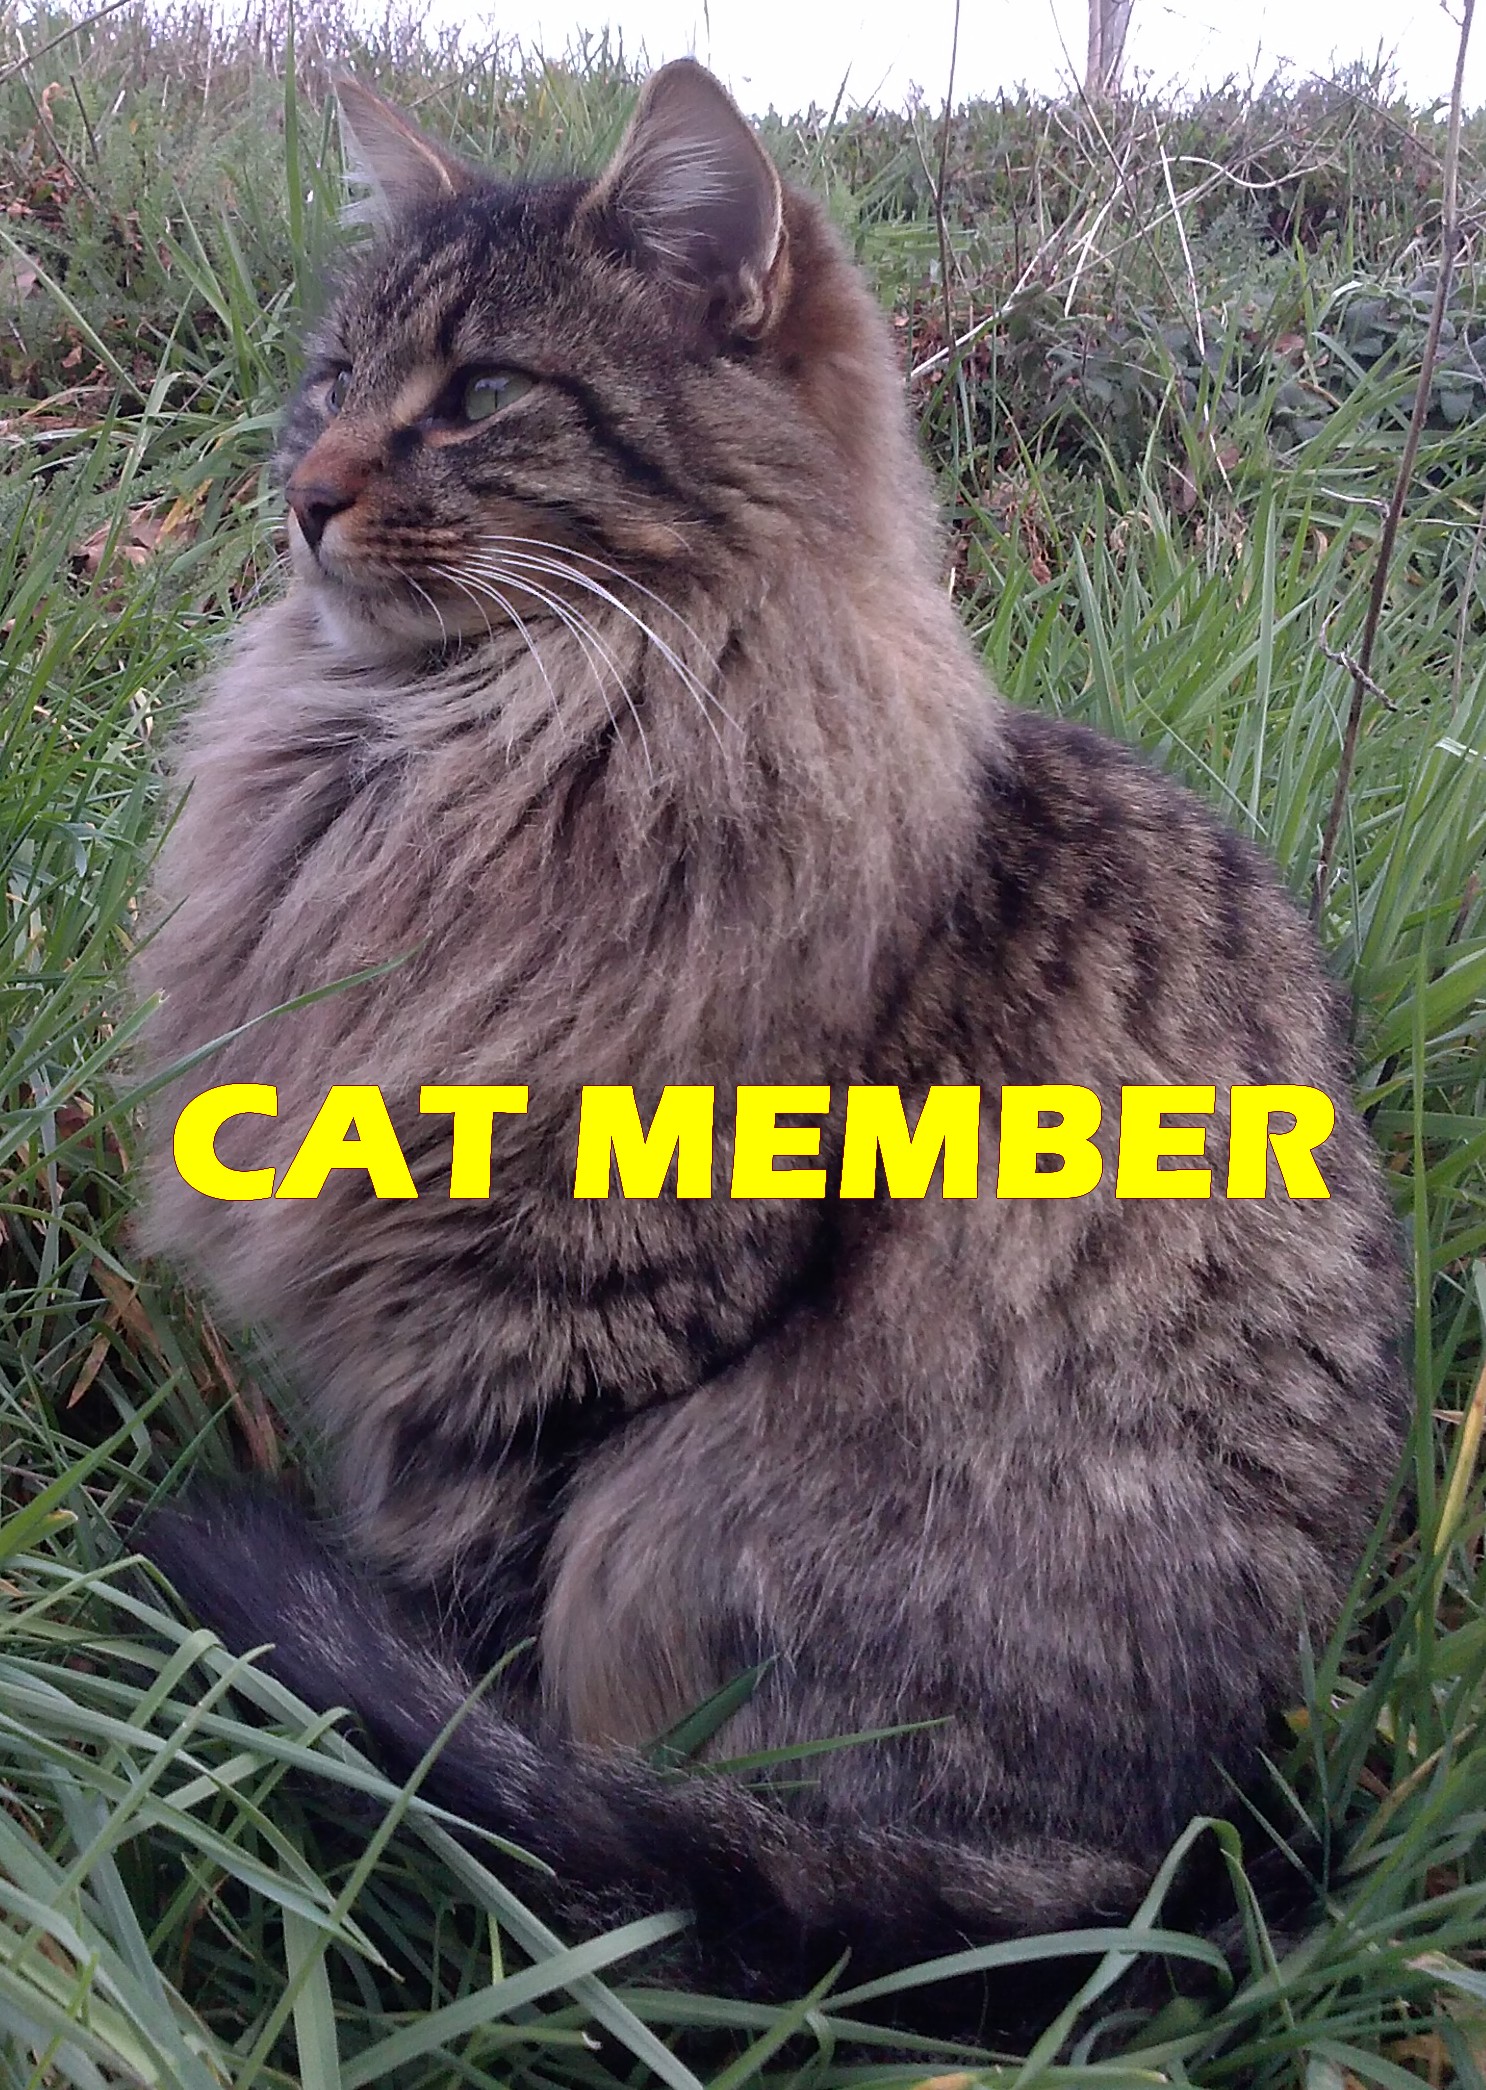 Cat member